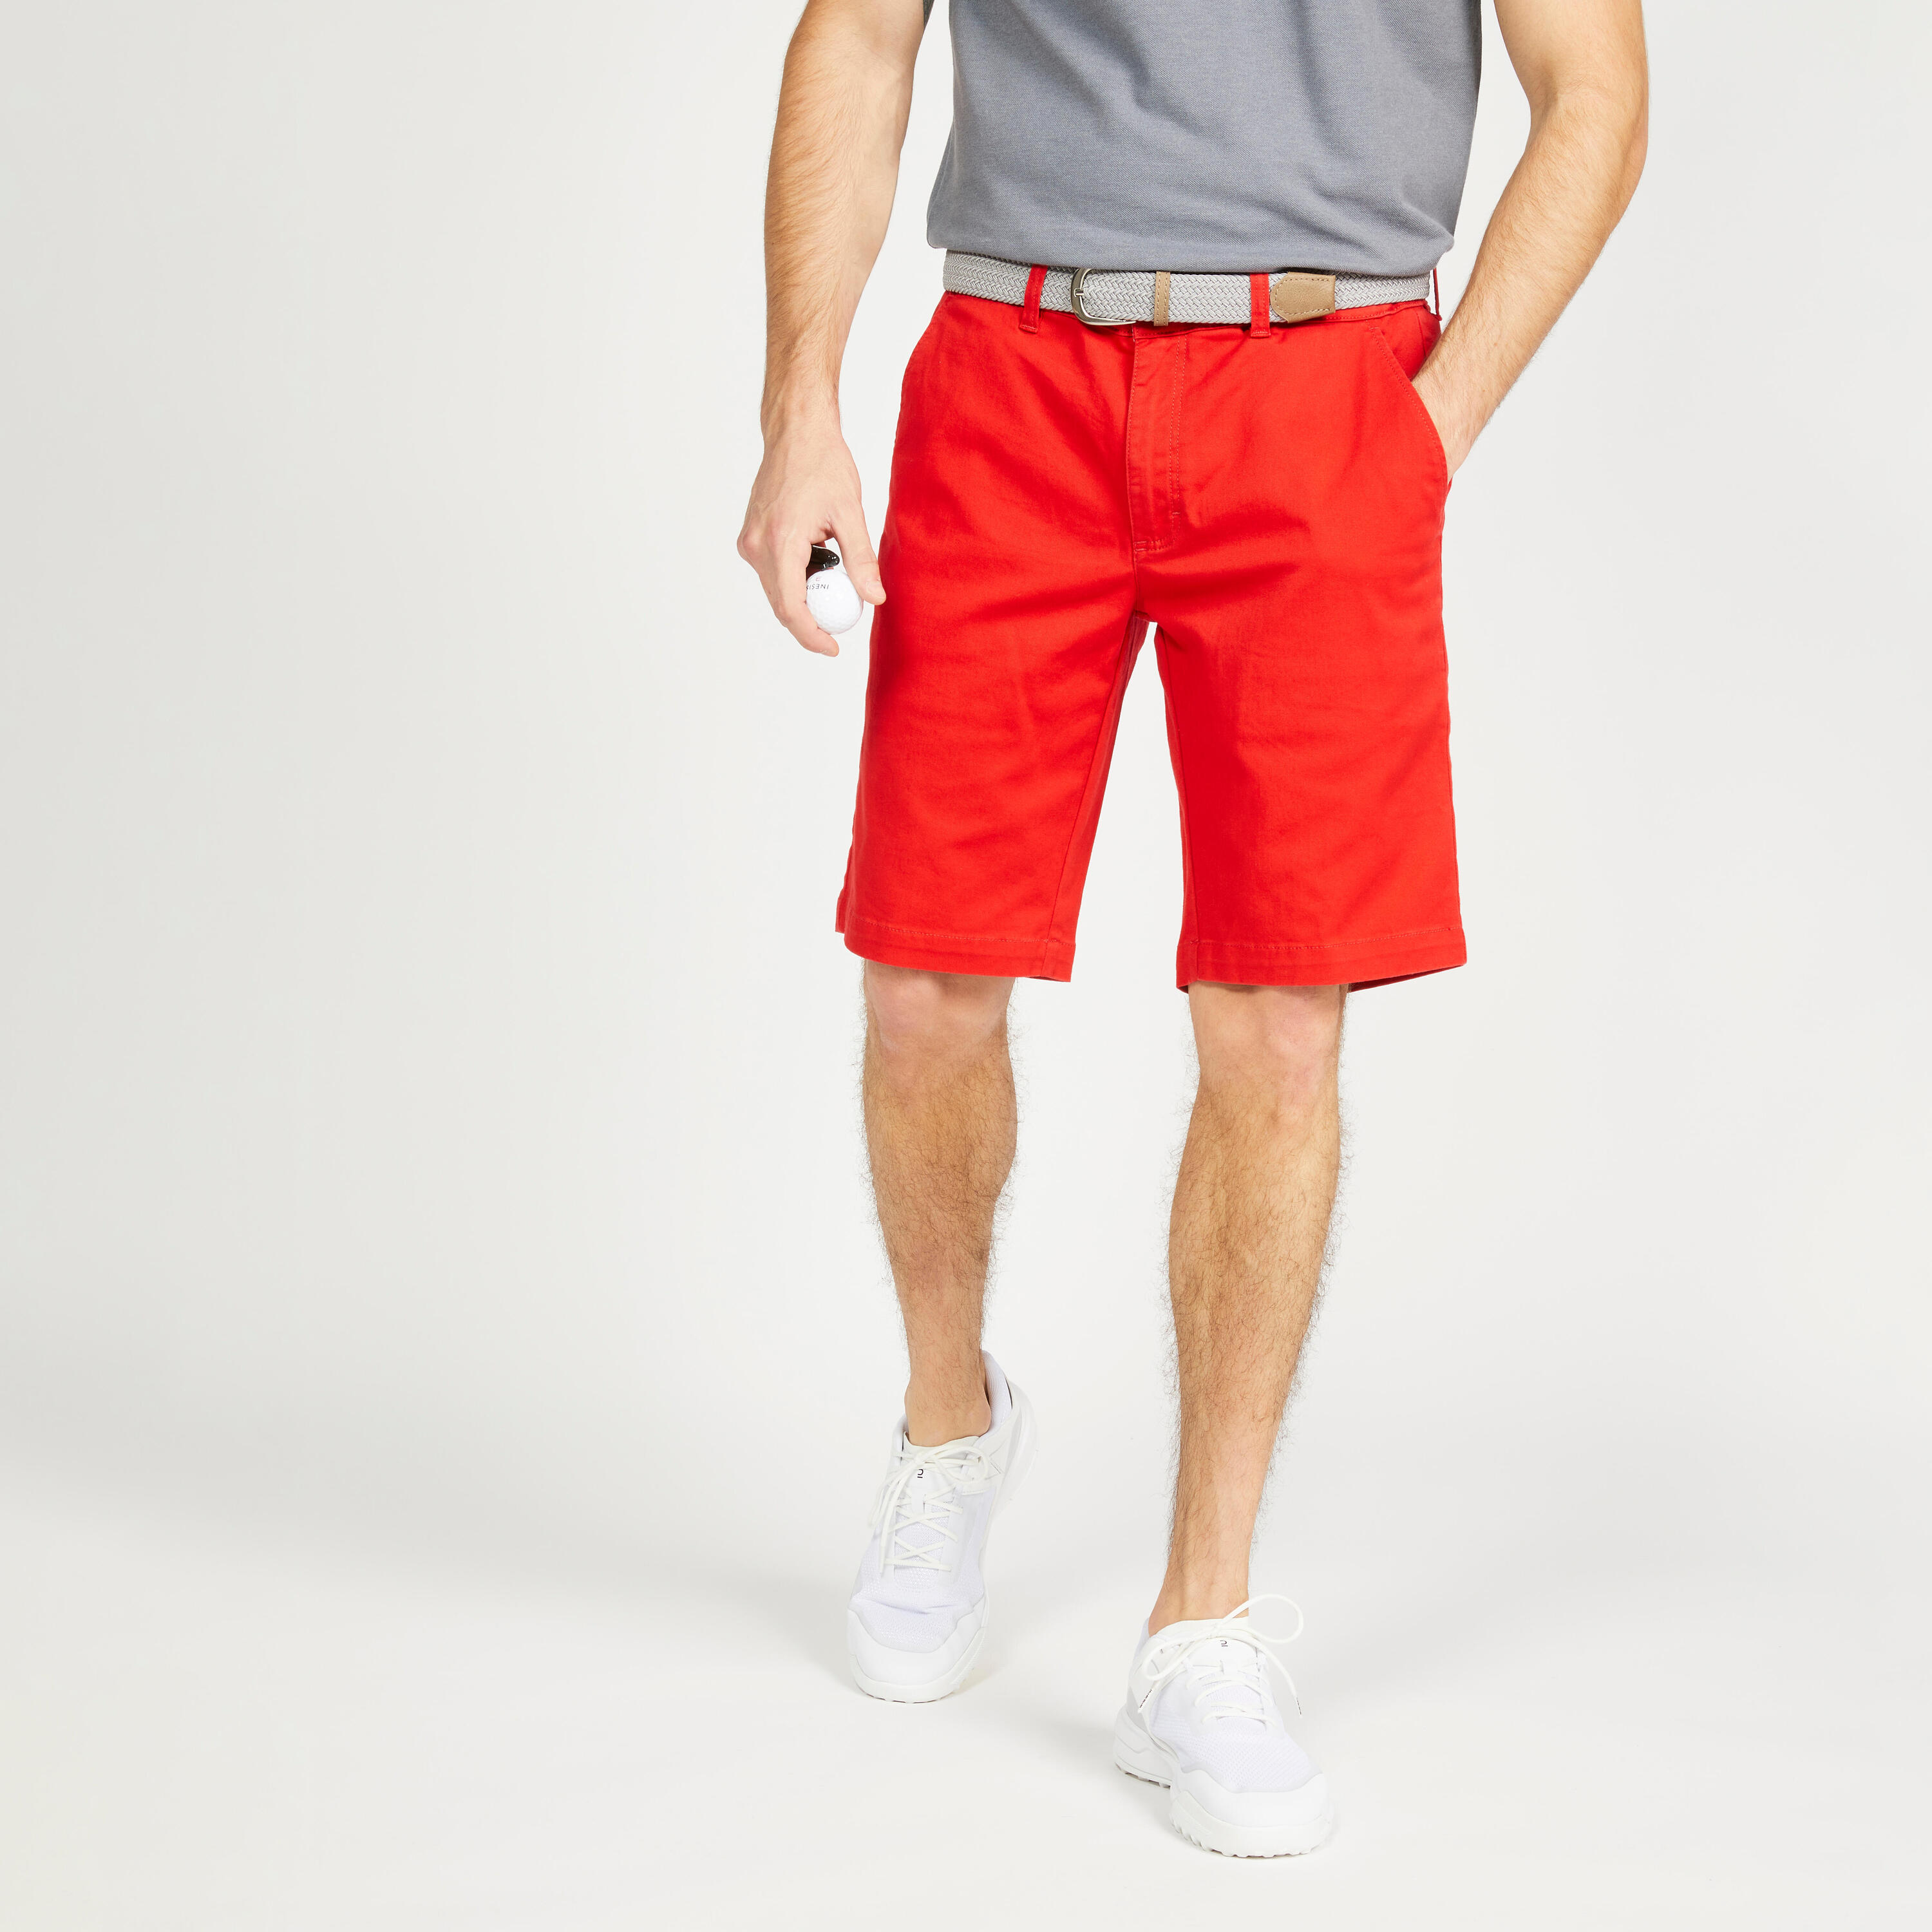 INESIS Men's golf chino shorts - MW500 red